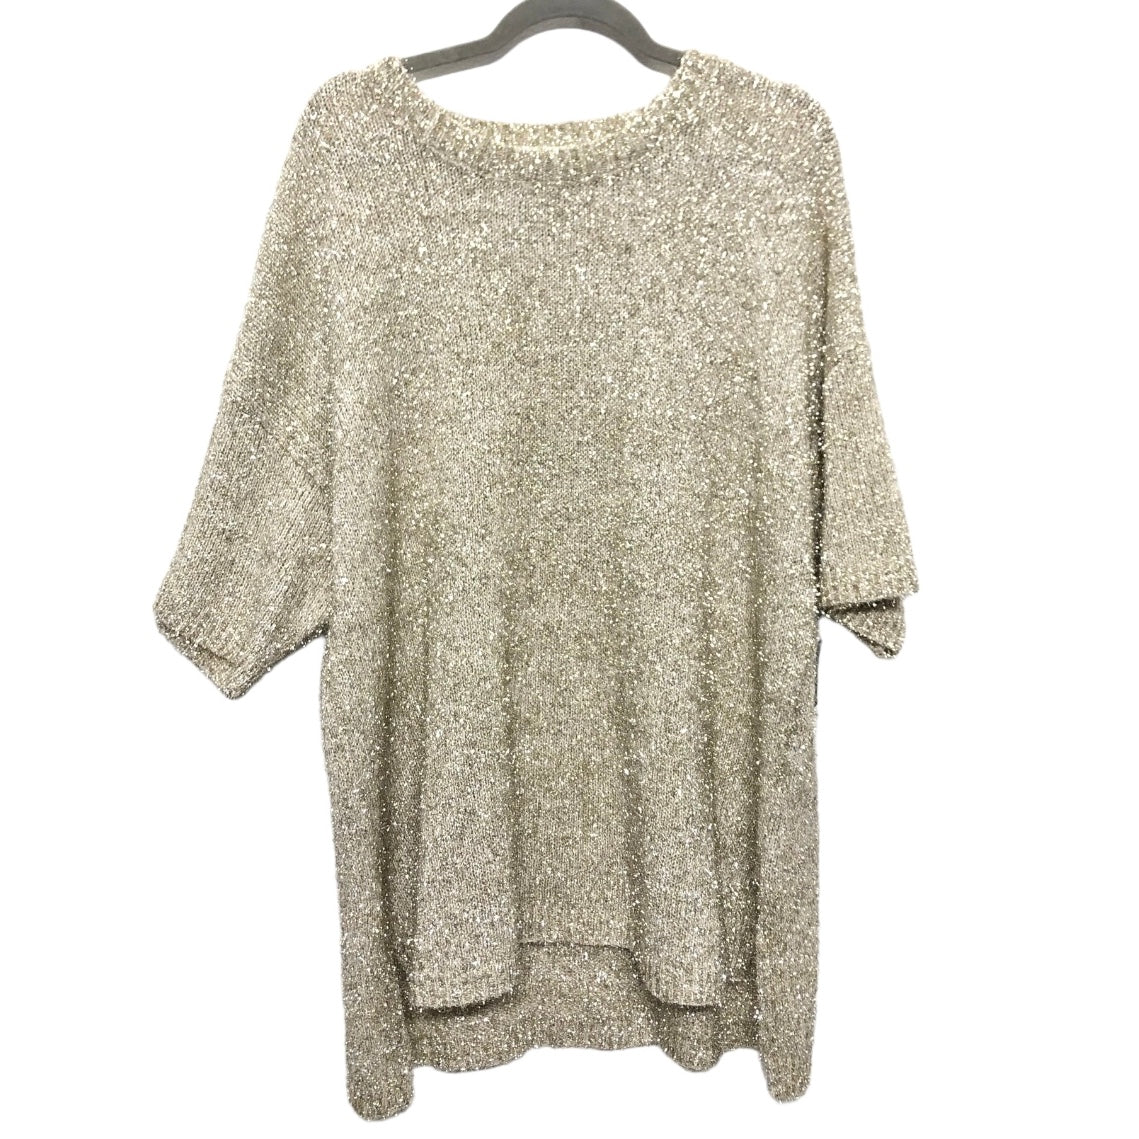 Beige Sweater Short Sleeve She + Sky, Size 1x